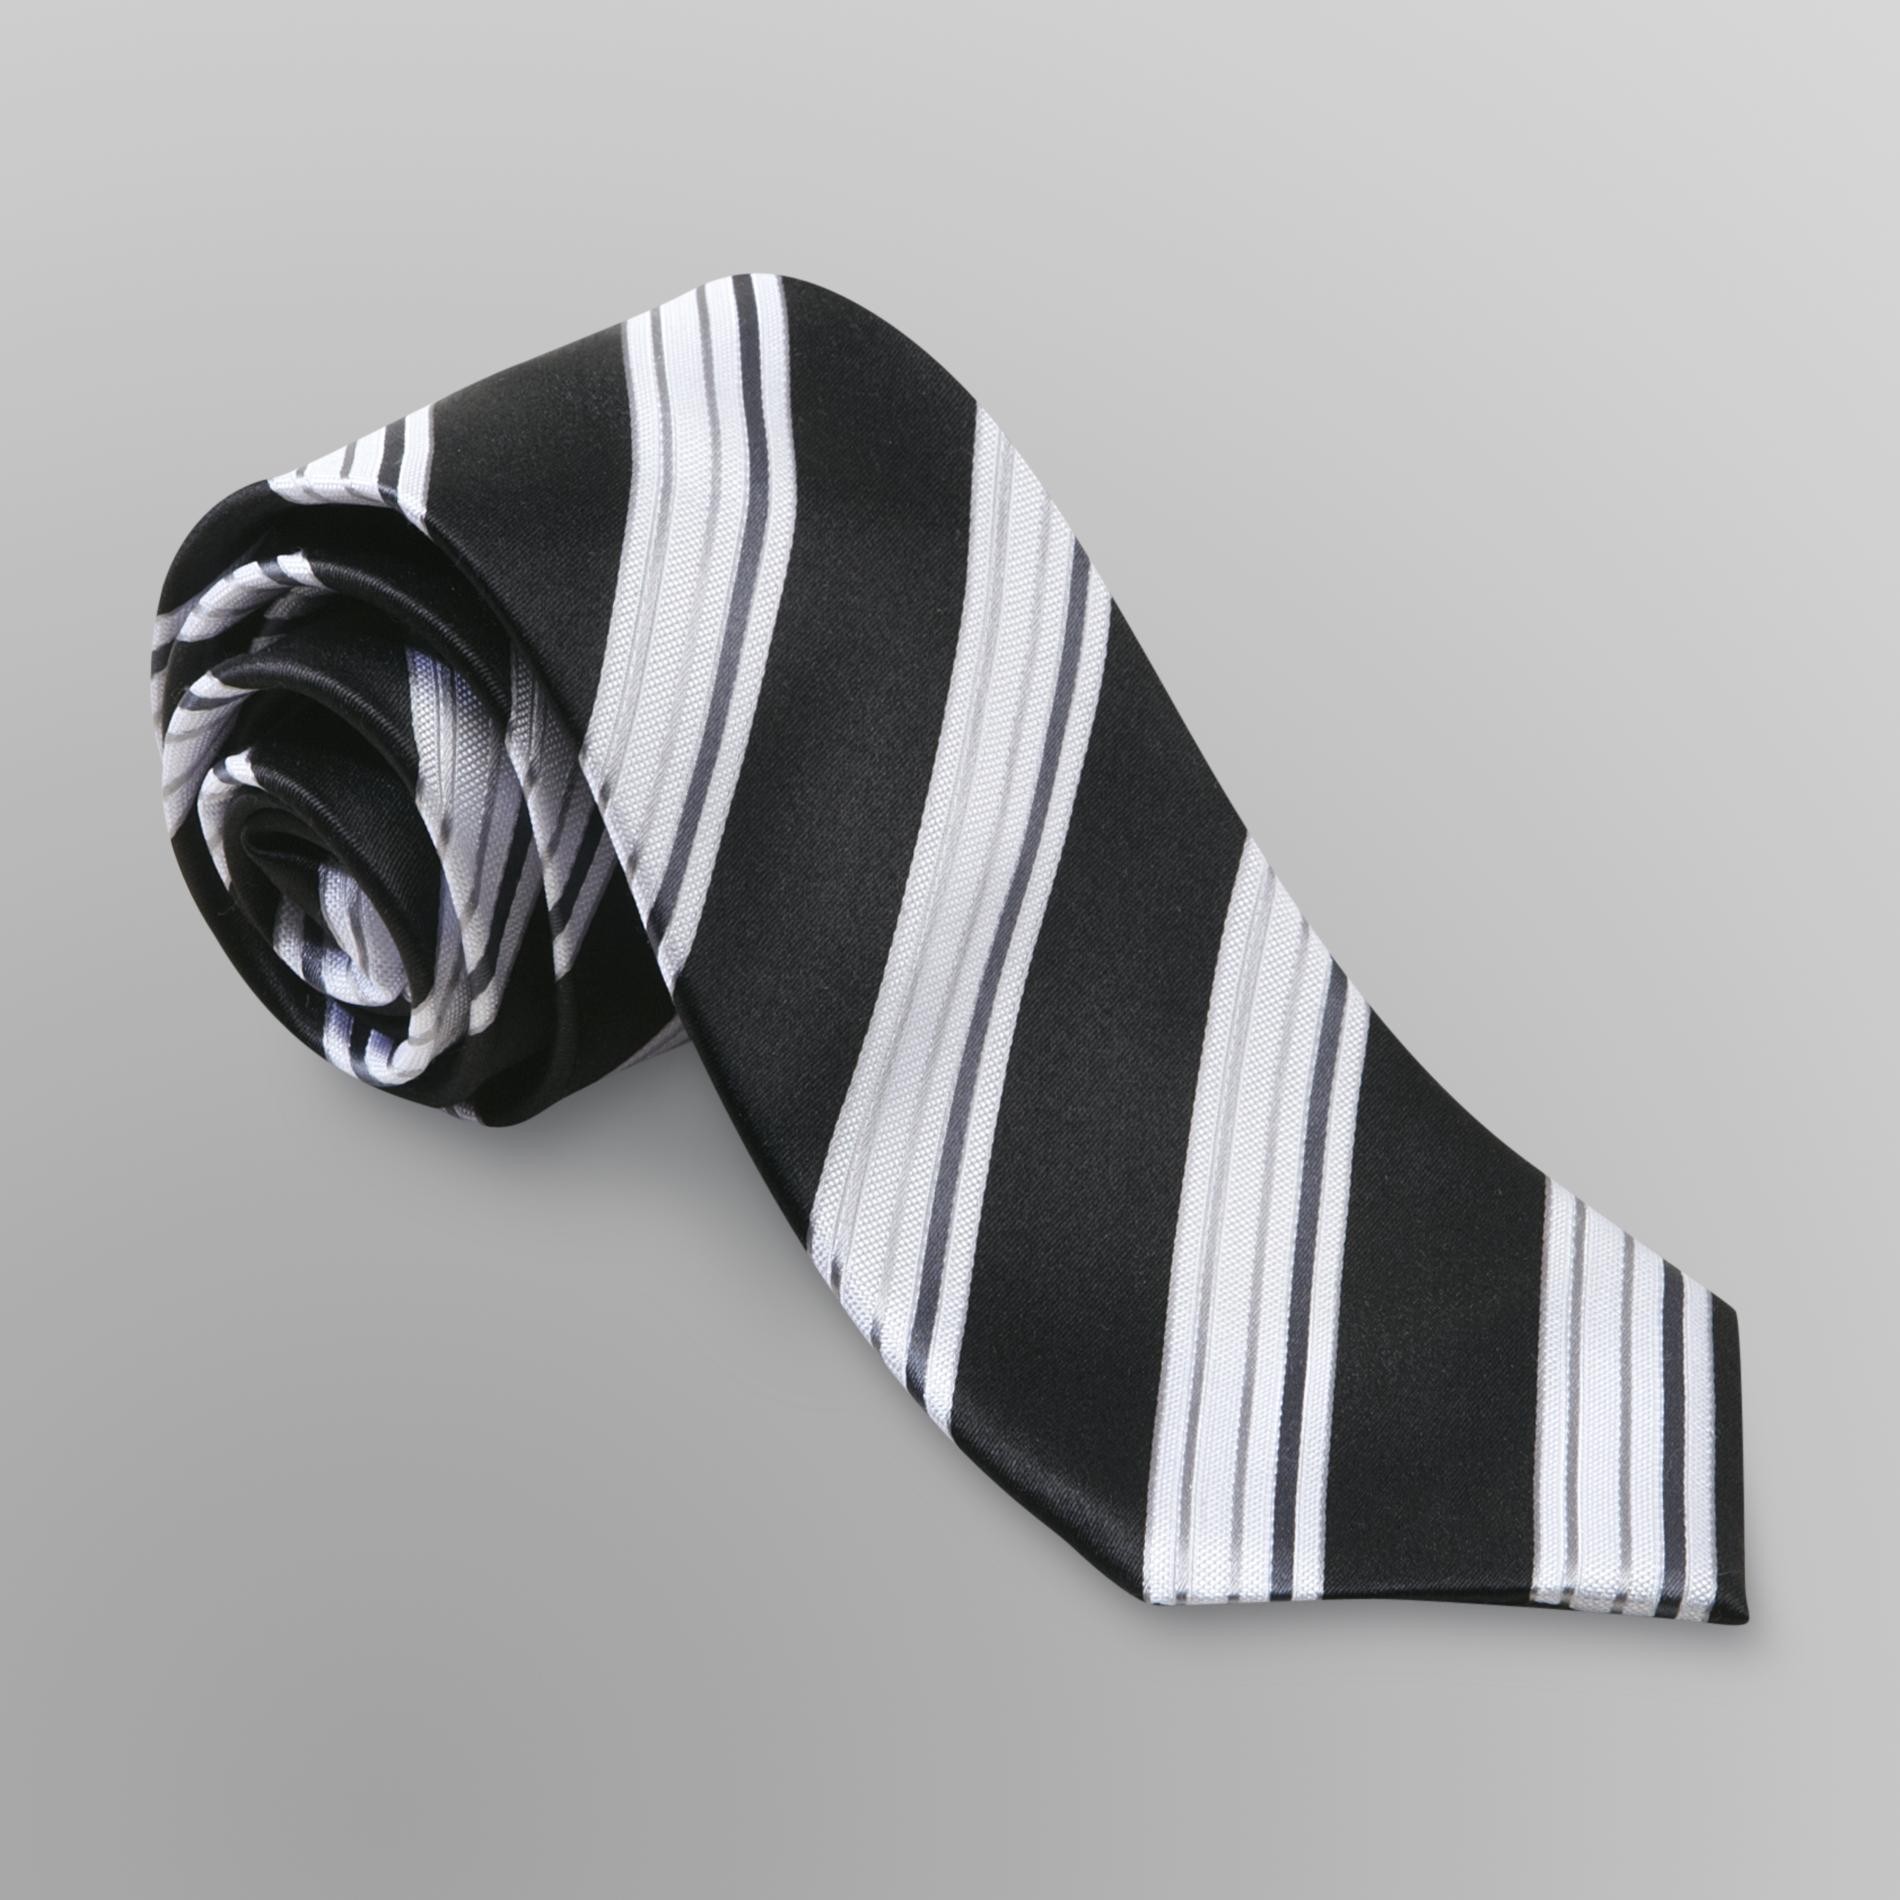 Dockers Men's Necktie - Andrew Stripe